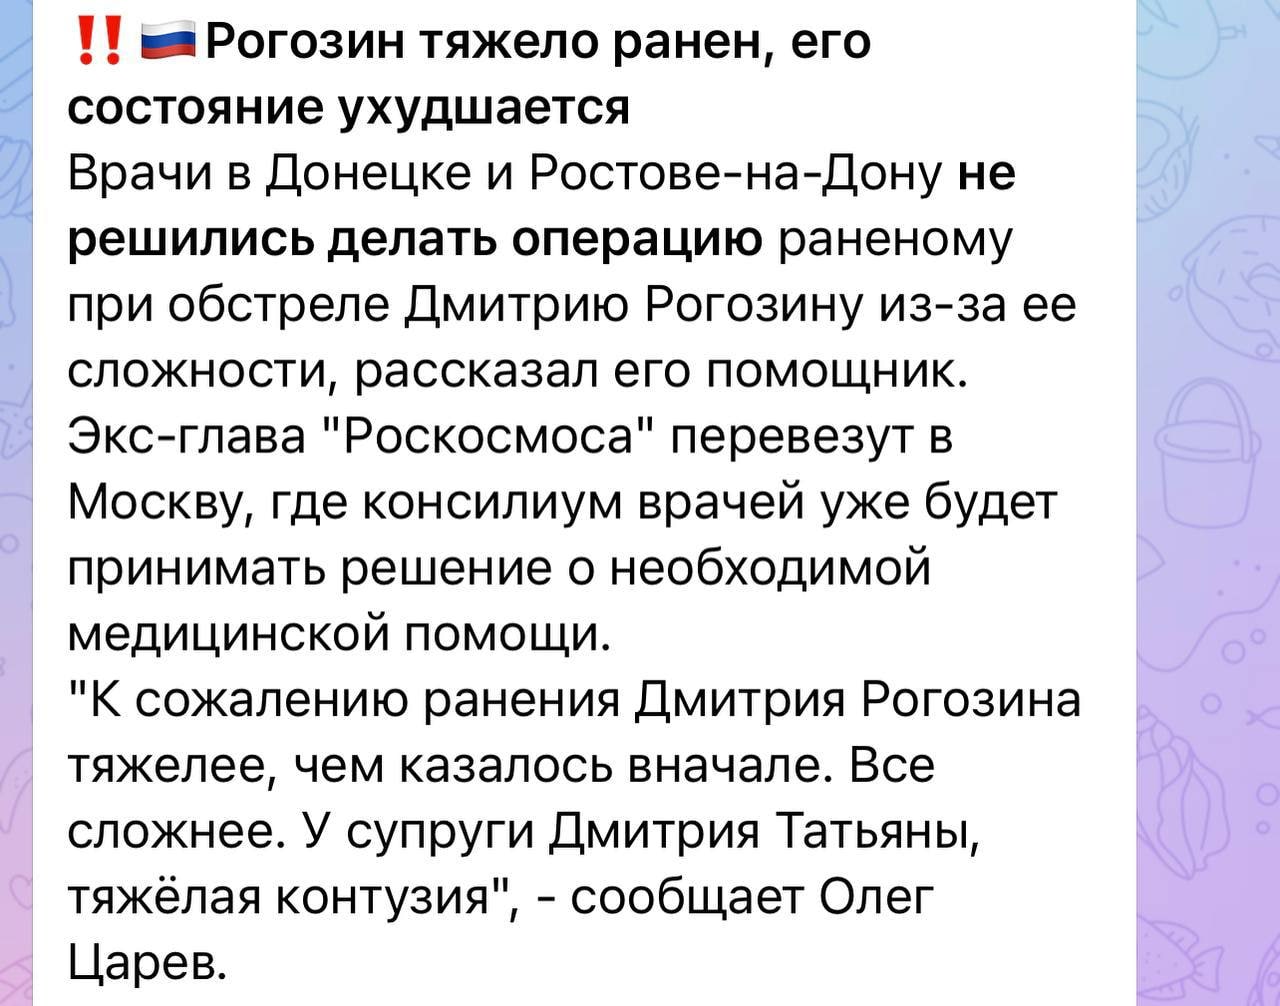 Состояние Рогозина ухудшается: врачи в